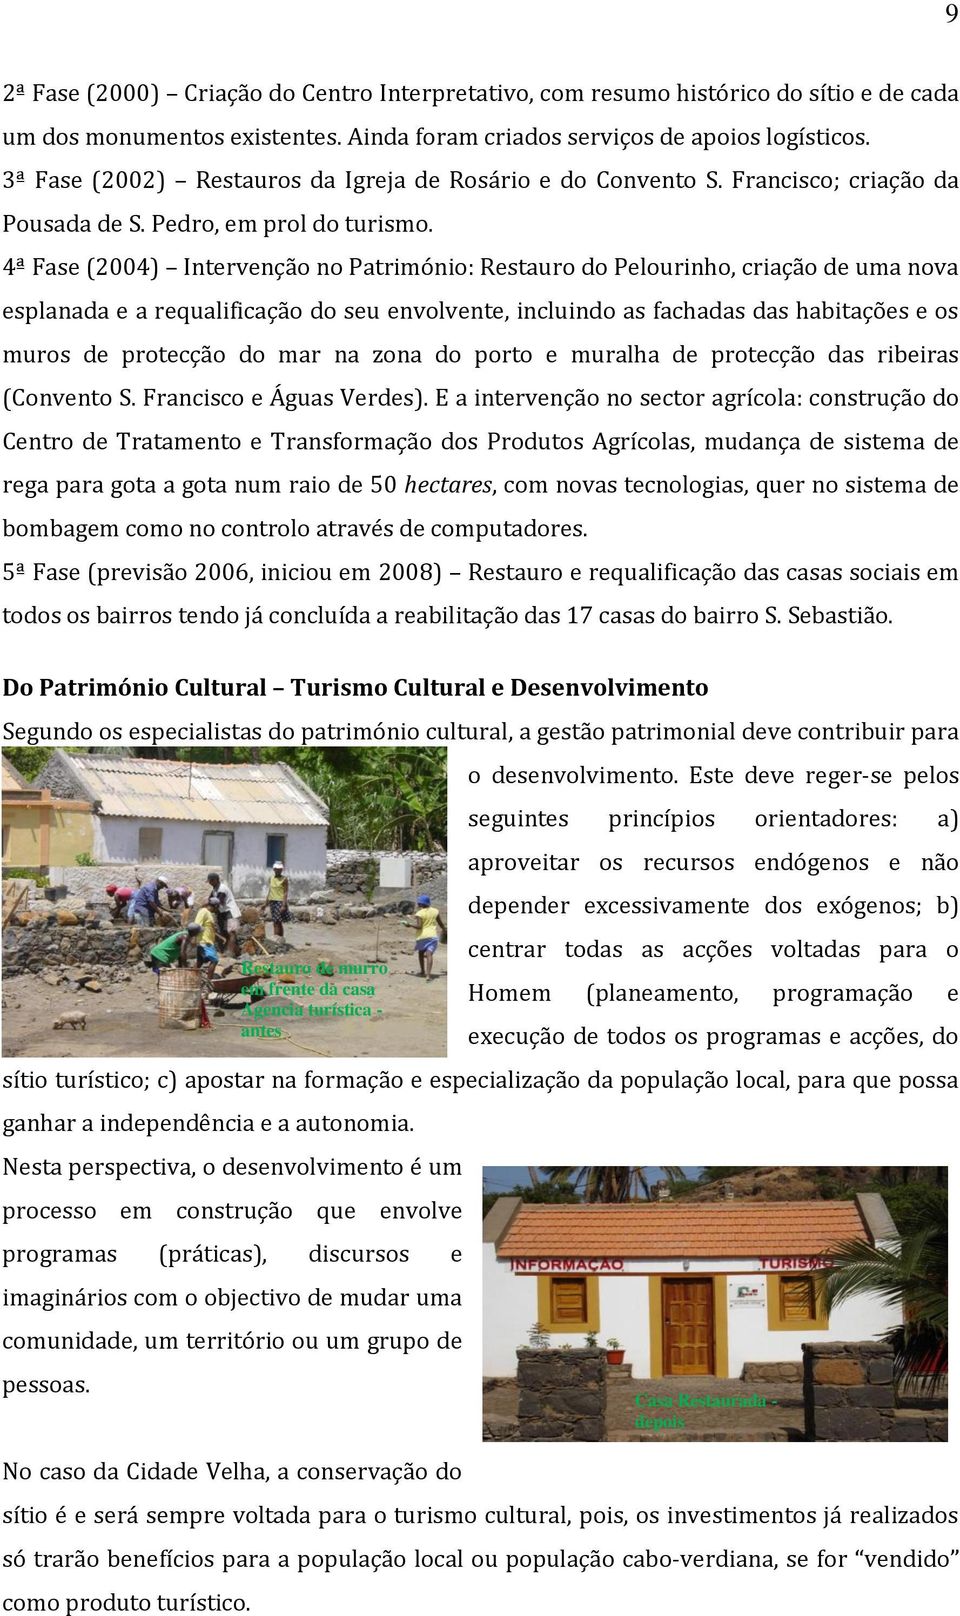 4ª Fase (2004) Intervenção no Património: Restauro do Pelourinho, criação de uma nova esplanada e a requalificação do seu envolvente, incluindo as fachadas das habitações e os muros de protecção do